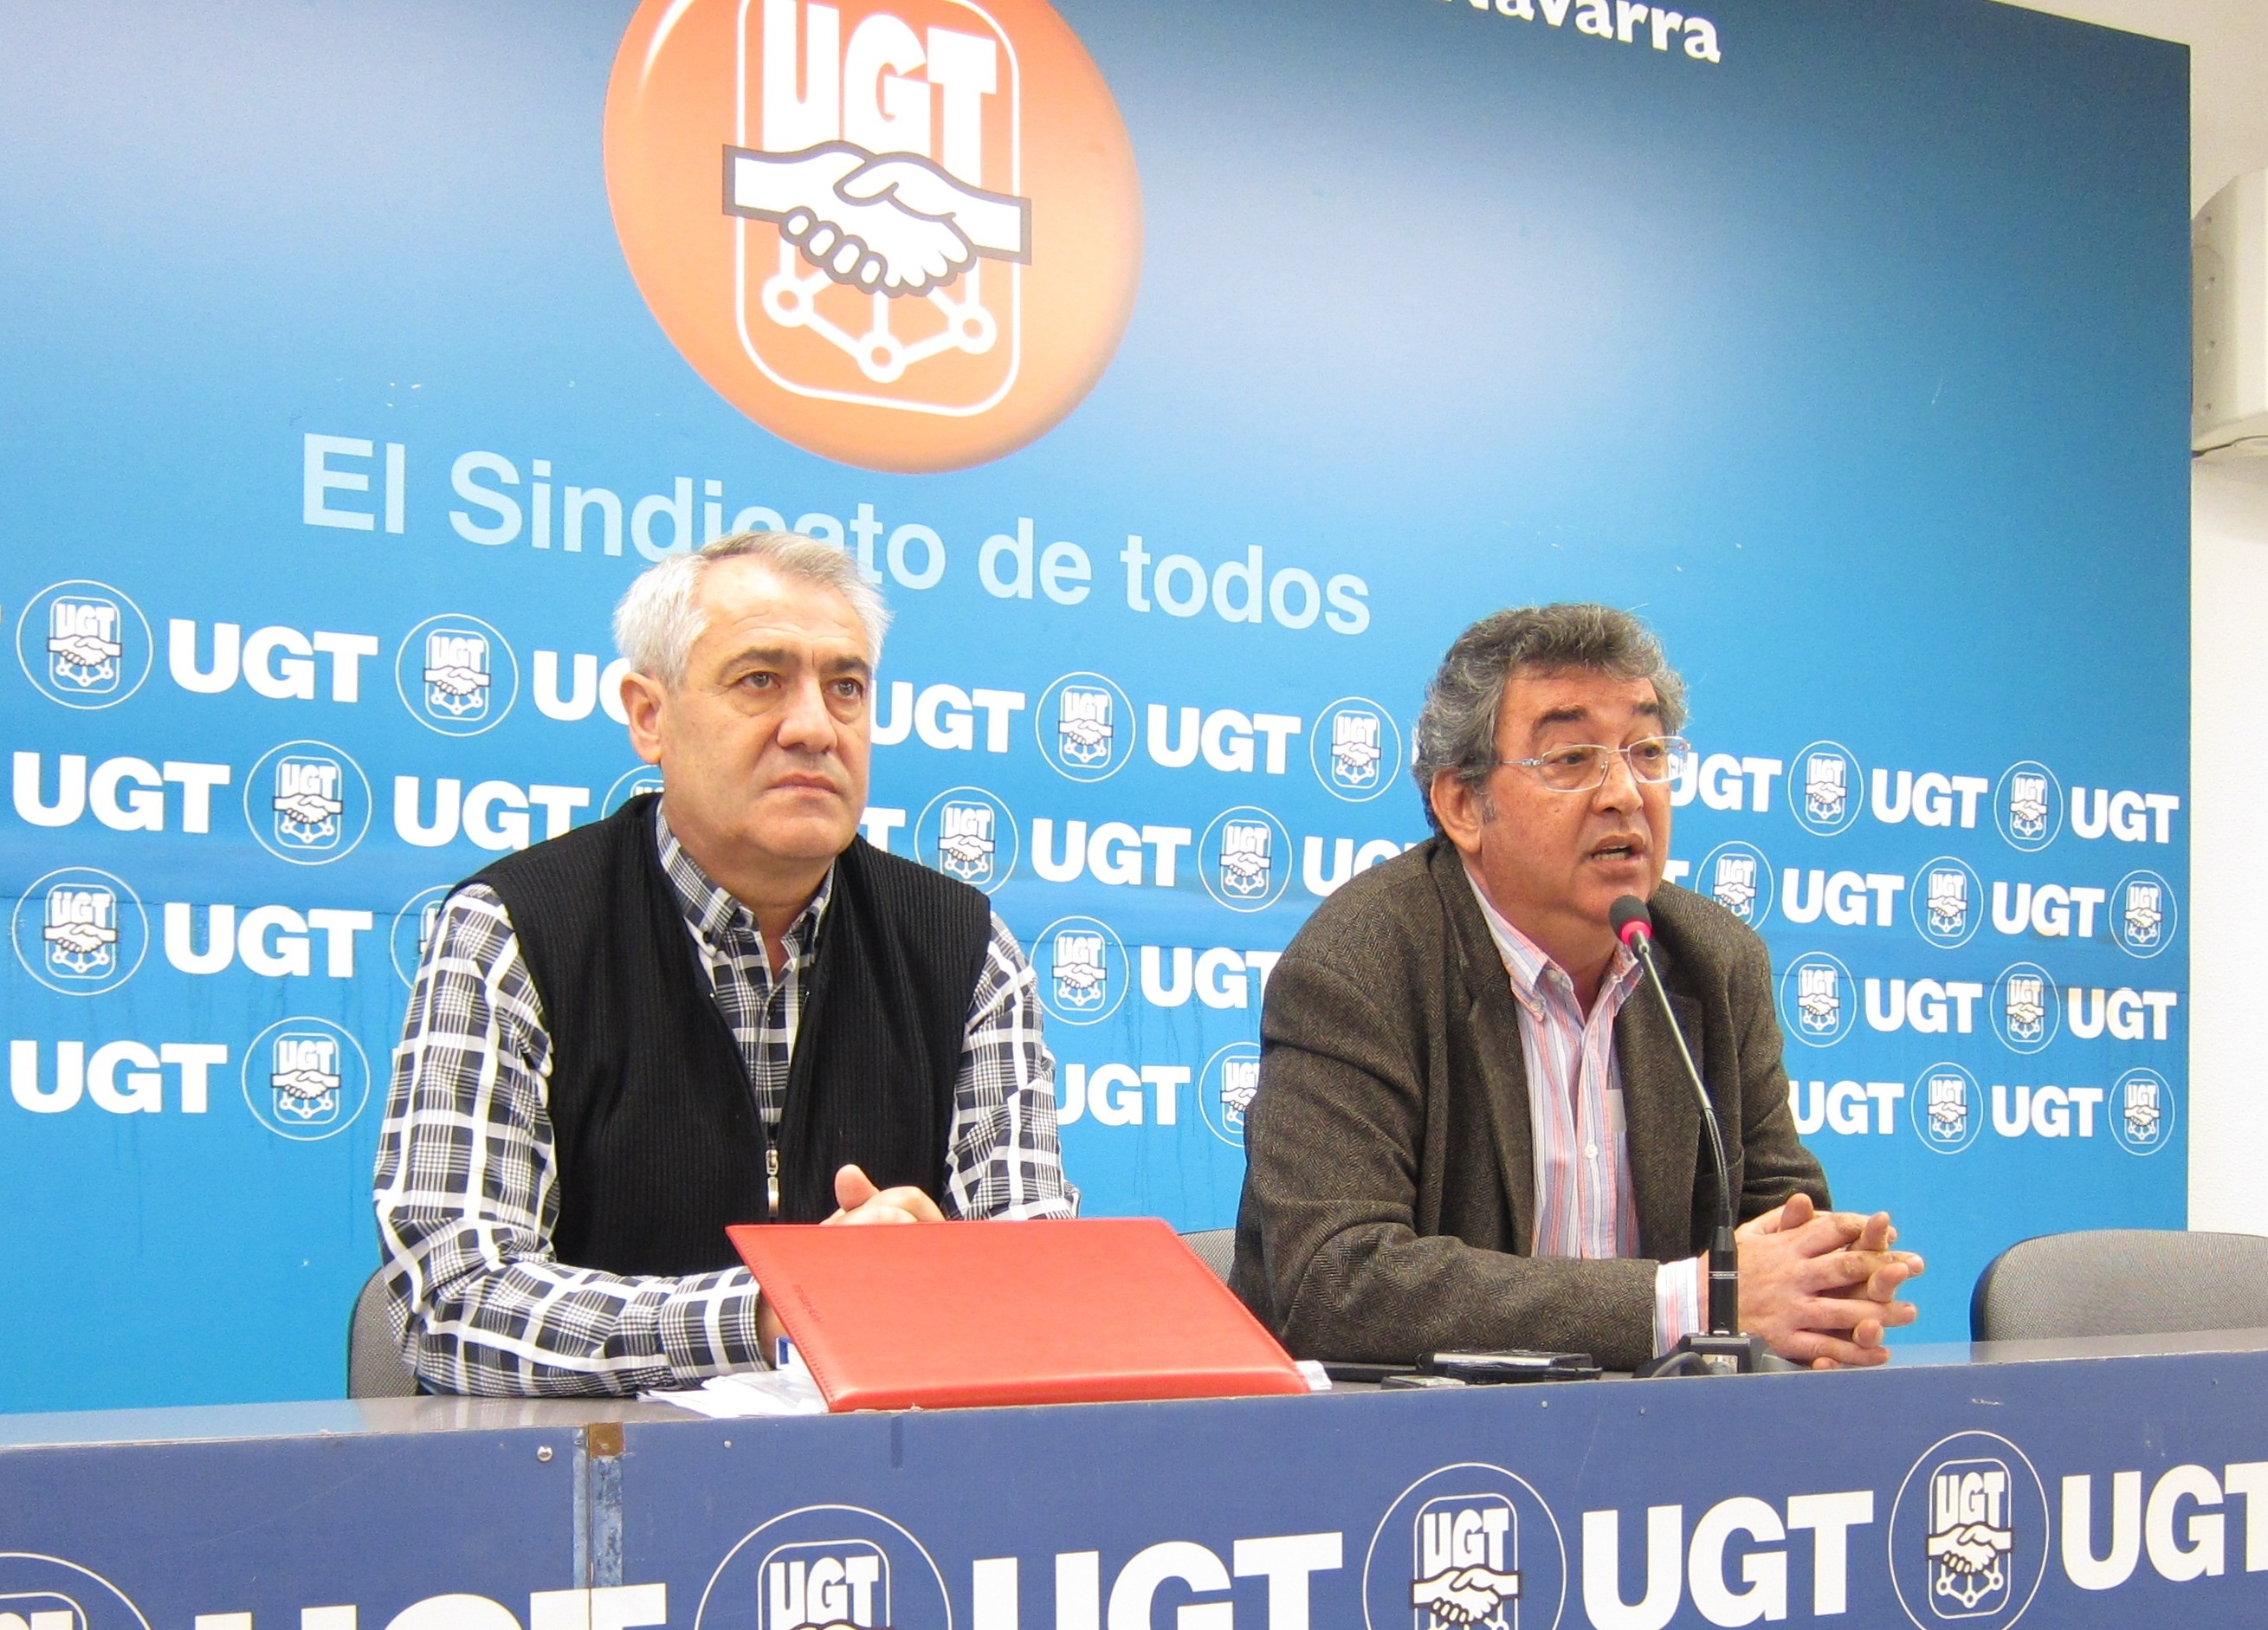 UGT propone un crecimiento moderado de los salarios